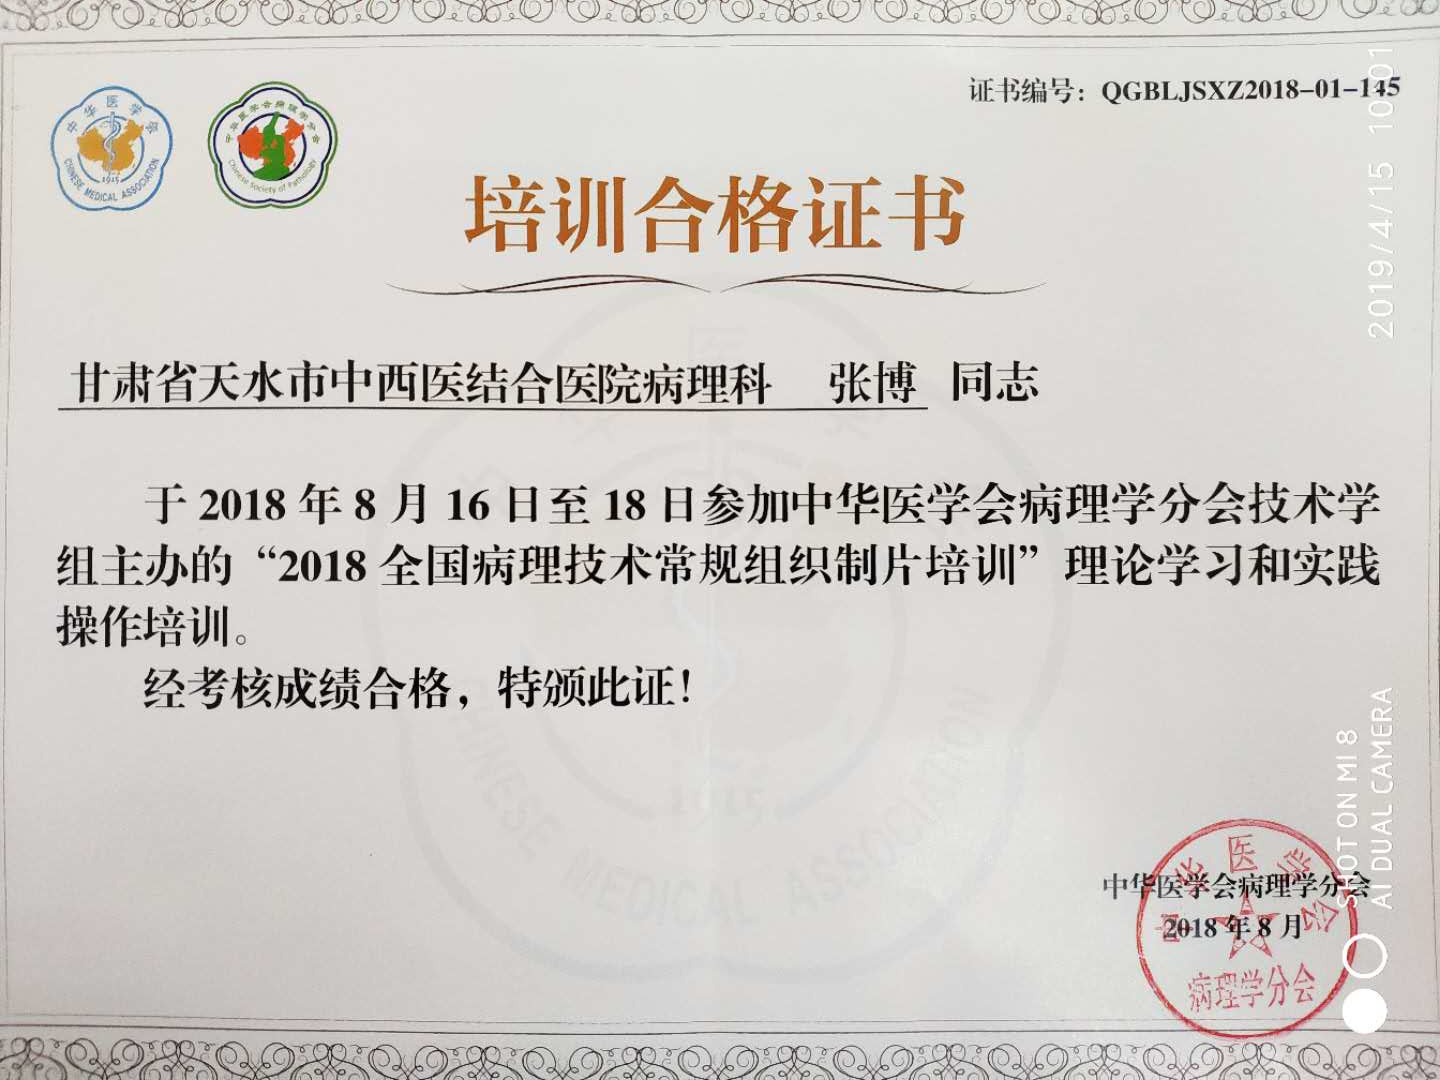 中华医学会病理学分会2018年全国常规组织处理石蜡切片制备技